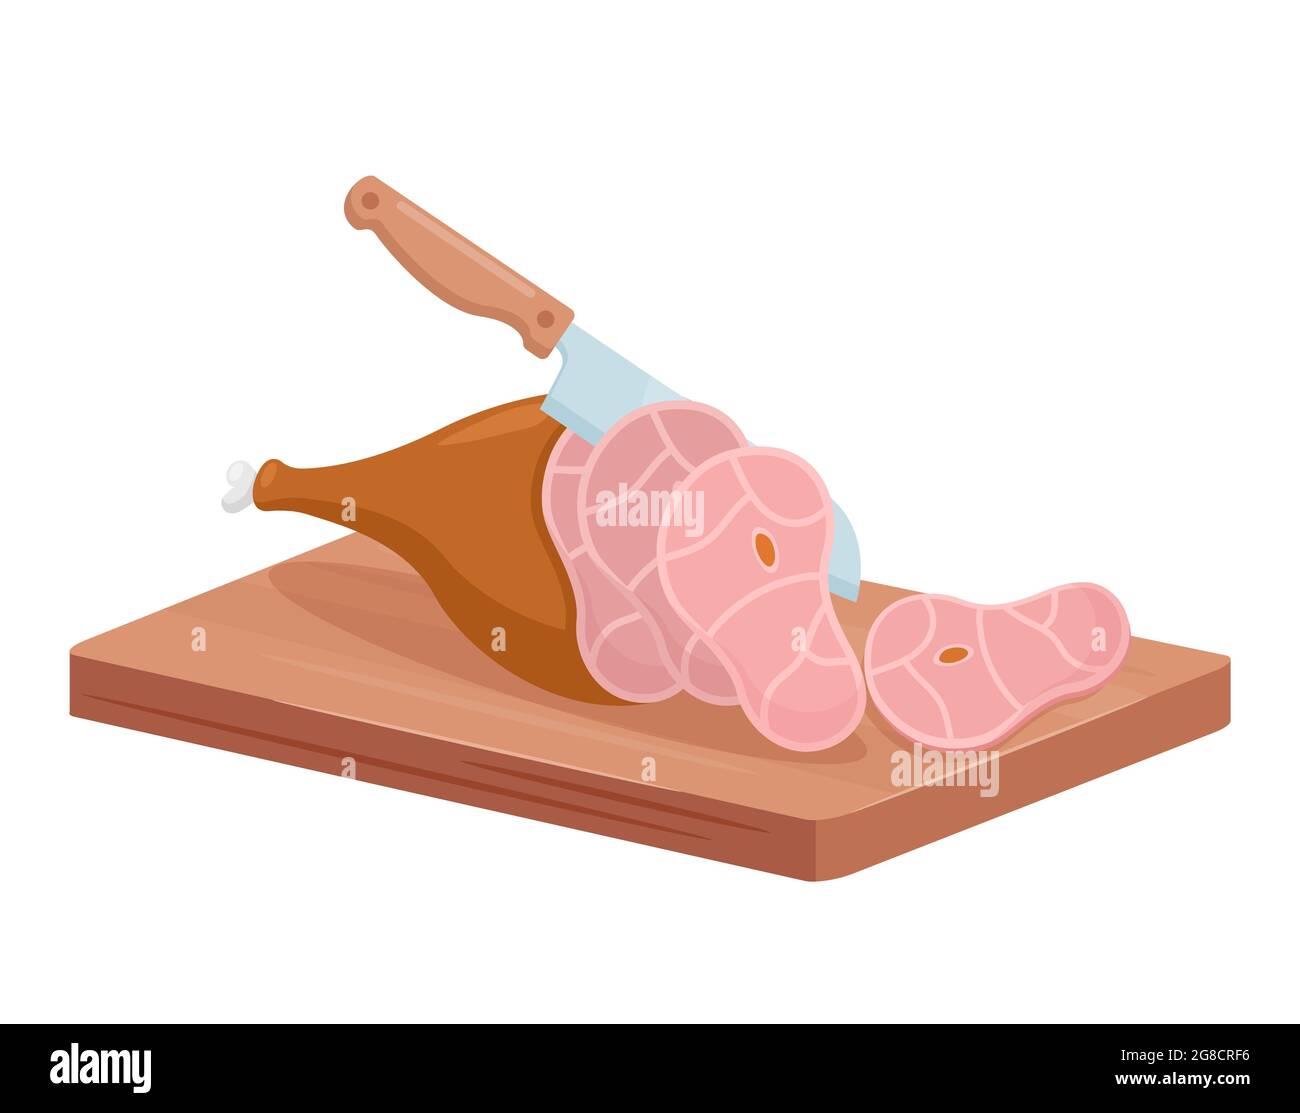 Prodotto a base di carne tagliata per macelleria coltello isometrico da chef macellaio affettando coscia di maiale affumicata Illustrazione Vettoriale